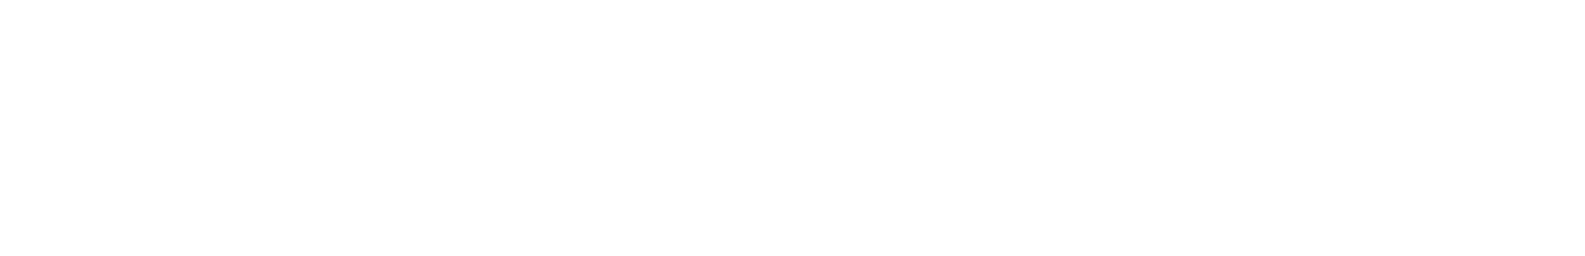 Flex Pass Header